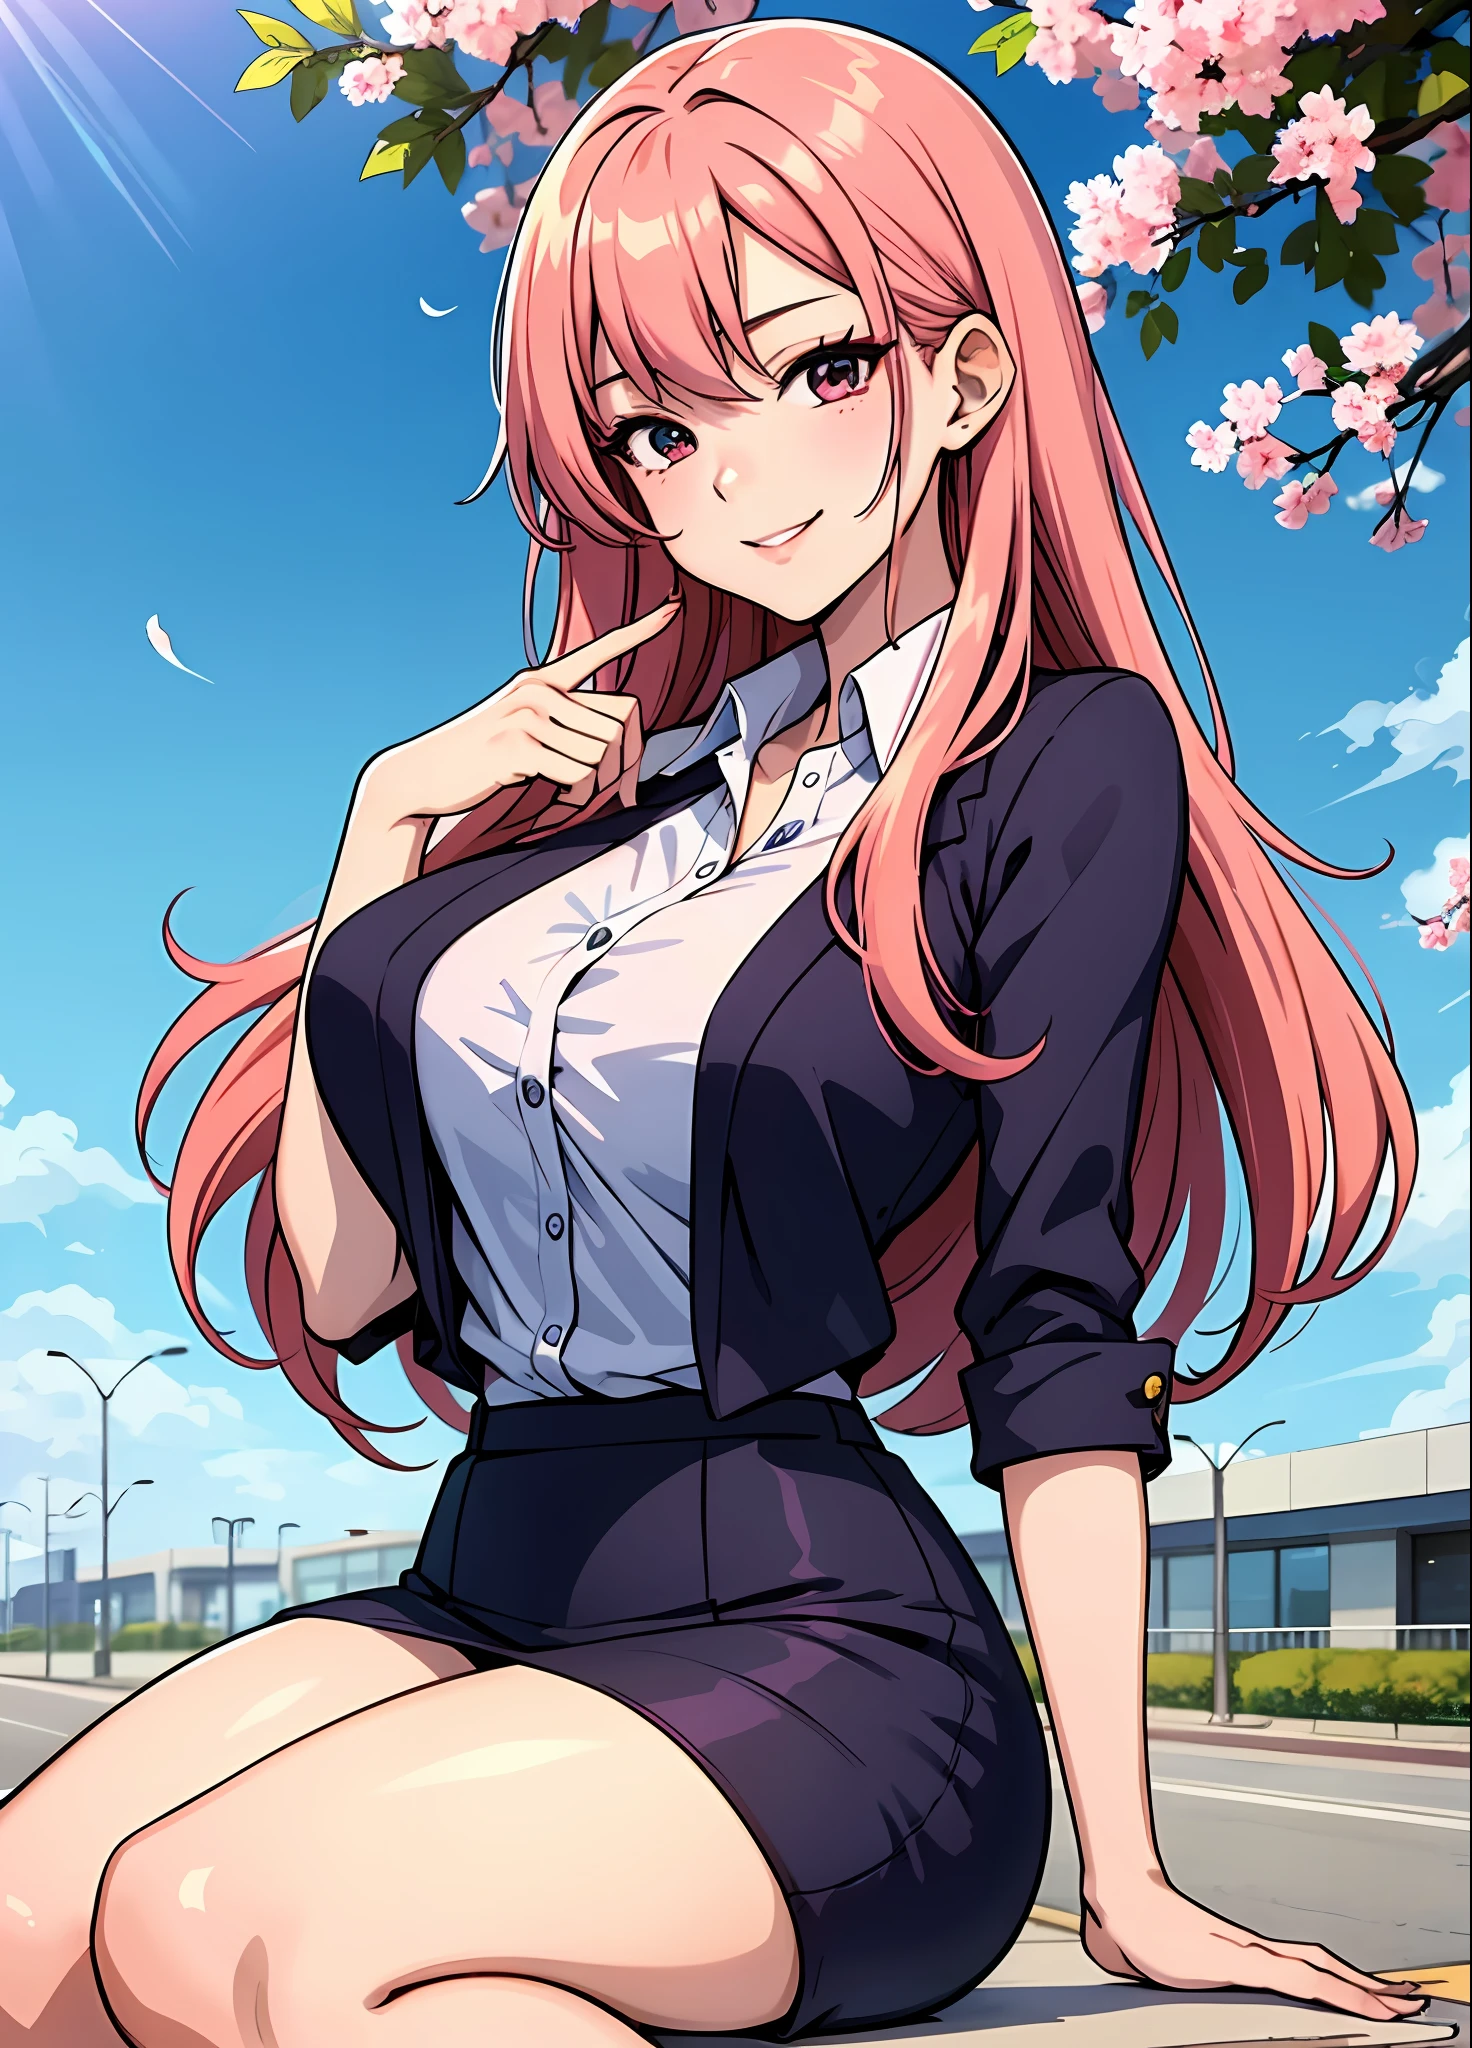 Junge Frau 29 Jahre: 1.3, Lachsfarbenes Haar erfüllt: 1.2, groß: 1.2, Beruf: 1.2, Tageszeit: 1.2, Auf der Strasse: 1.2, Filmbeleuchtung, beste Qualität, 8k ein Cartoon-Mädchen mit langen roten Haaren und einem rosa Oberteil, haruno sakura, provokantes Lächeln, Shoujo Manga, Ecchi-Anime-Stil, manhwa,definierter Körper, Büro Uniform, große Brüste